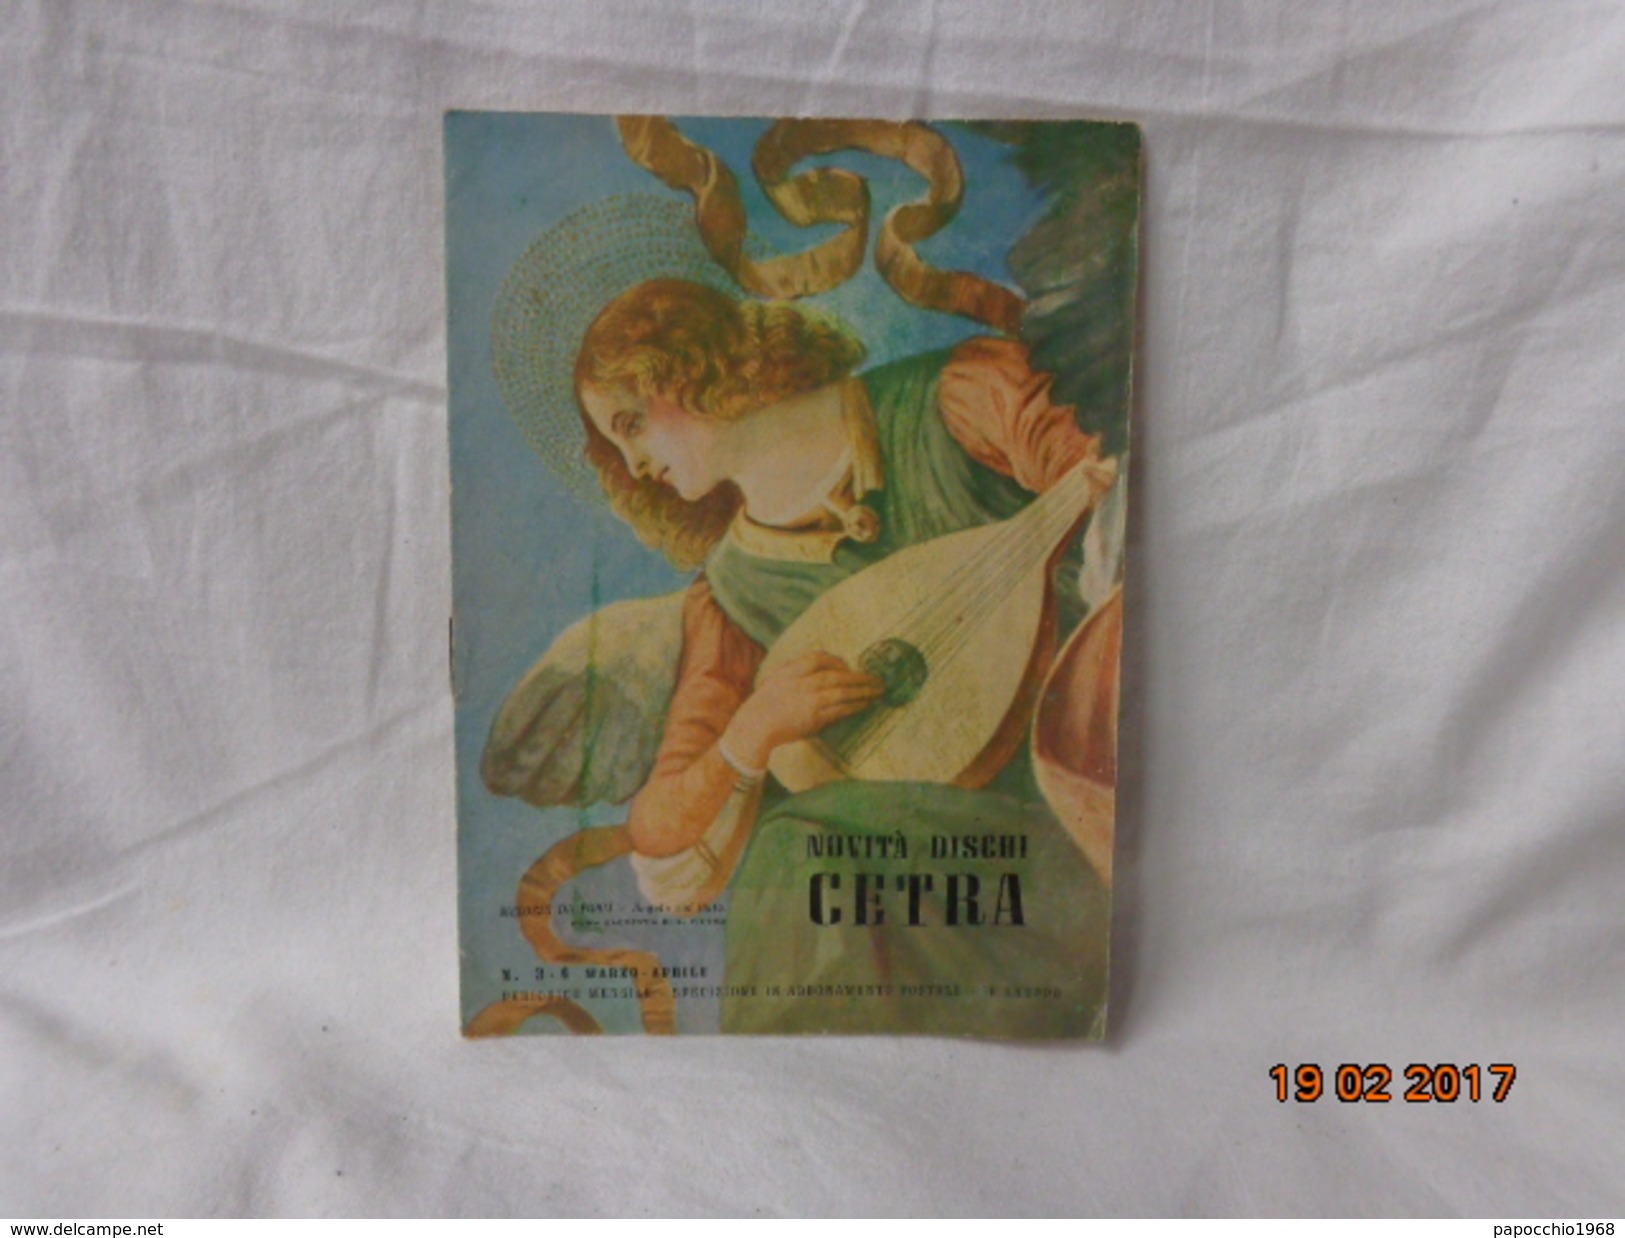 CATALOGO NOVITA' DISCHI CETRA EPOCA 1950 - Colecciones Completas